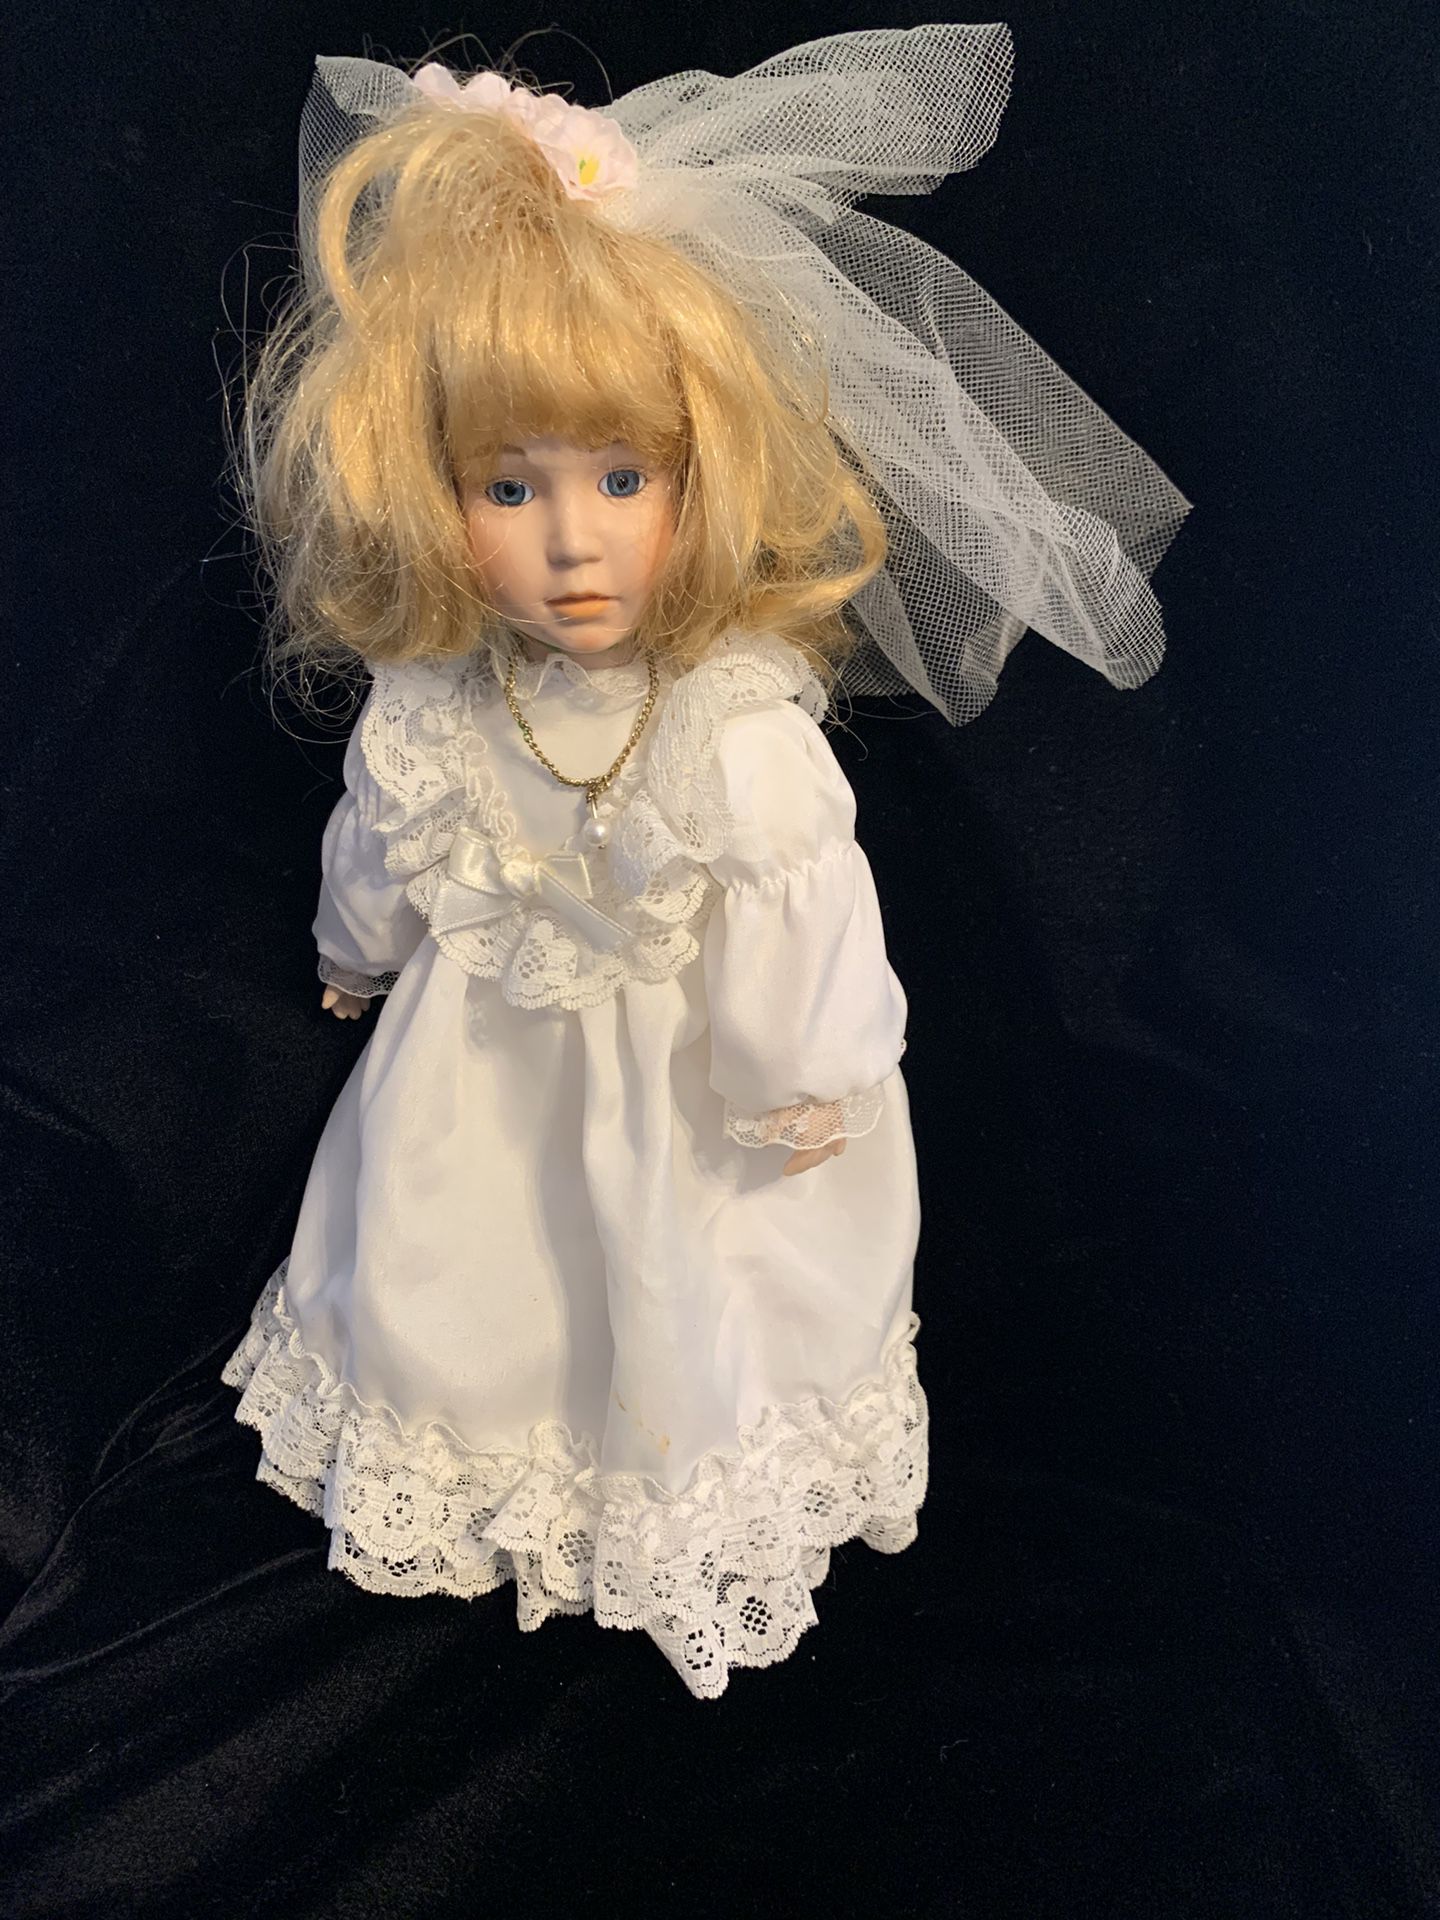 Brinn’s Limited Edition Bridal Doll